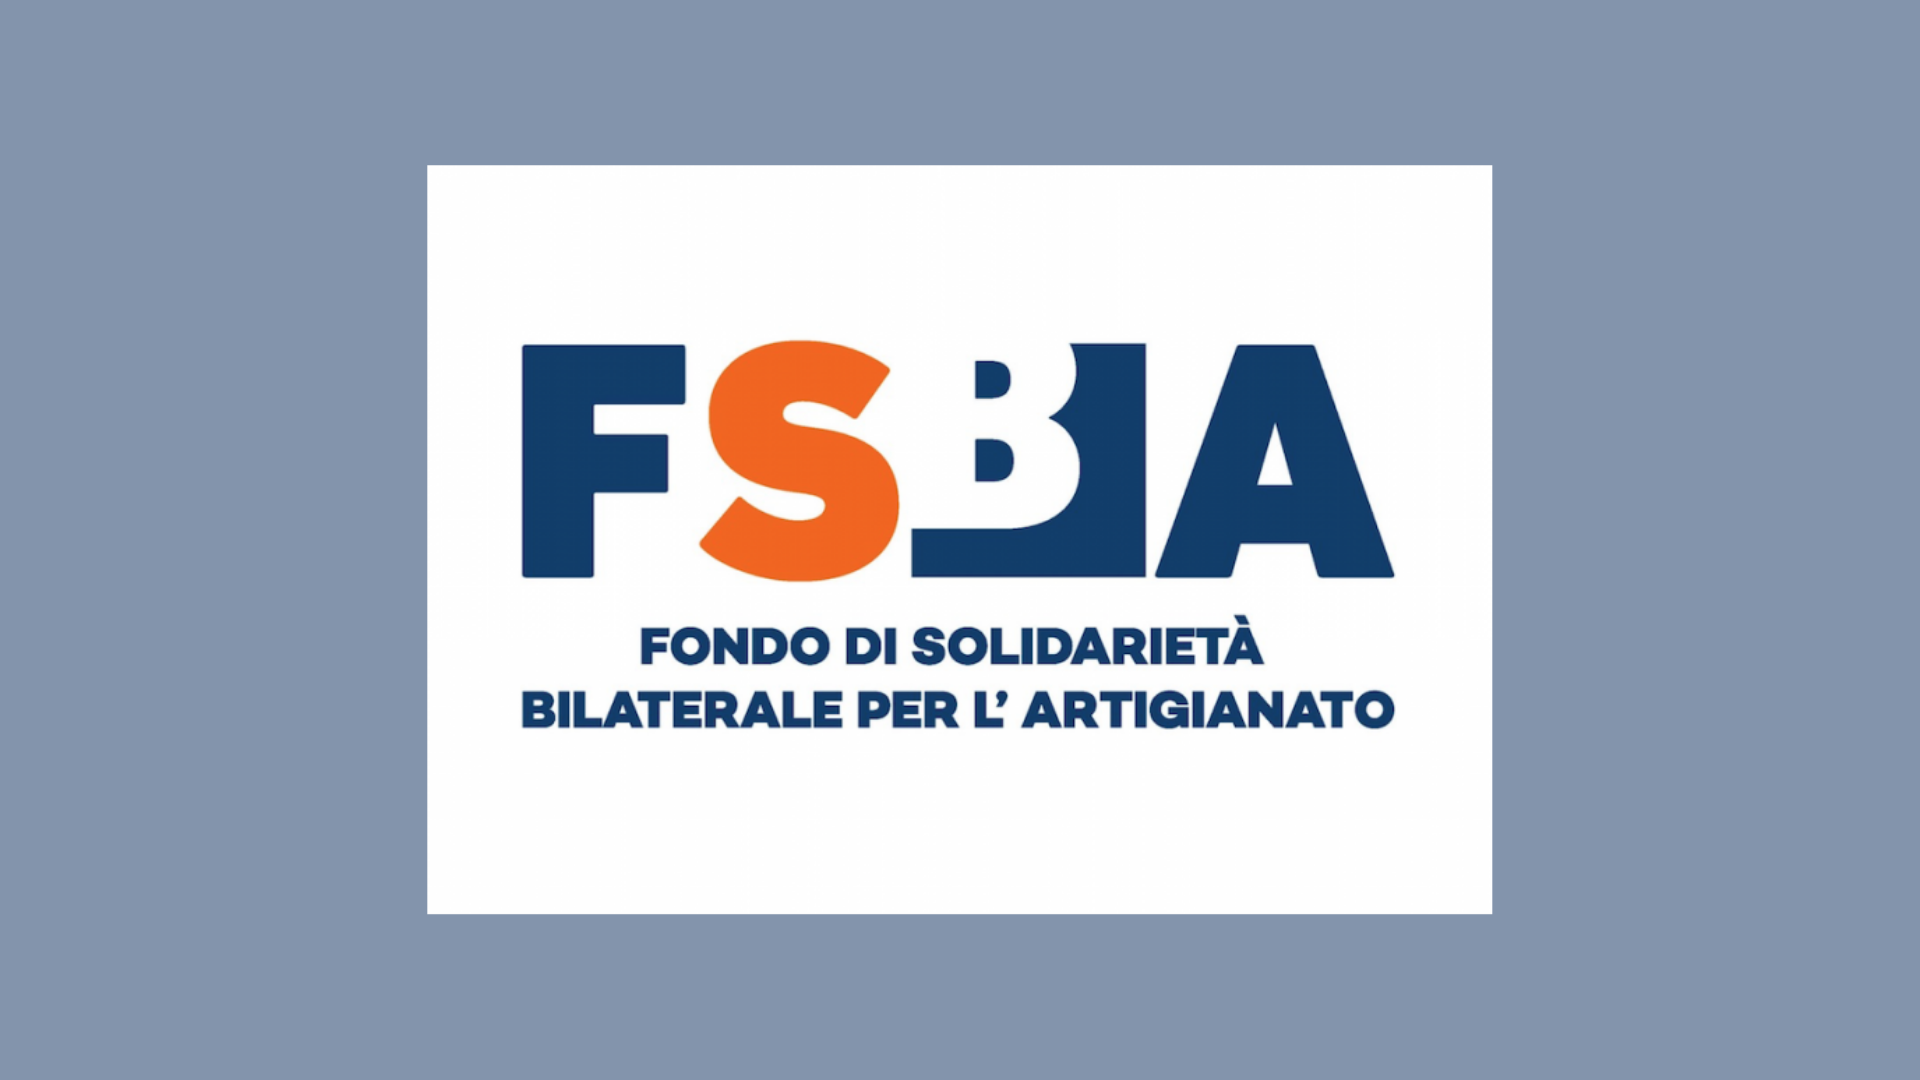 FSBA il Fondo di Solidarieta Bilaterale per Artigianato